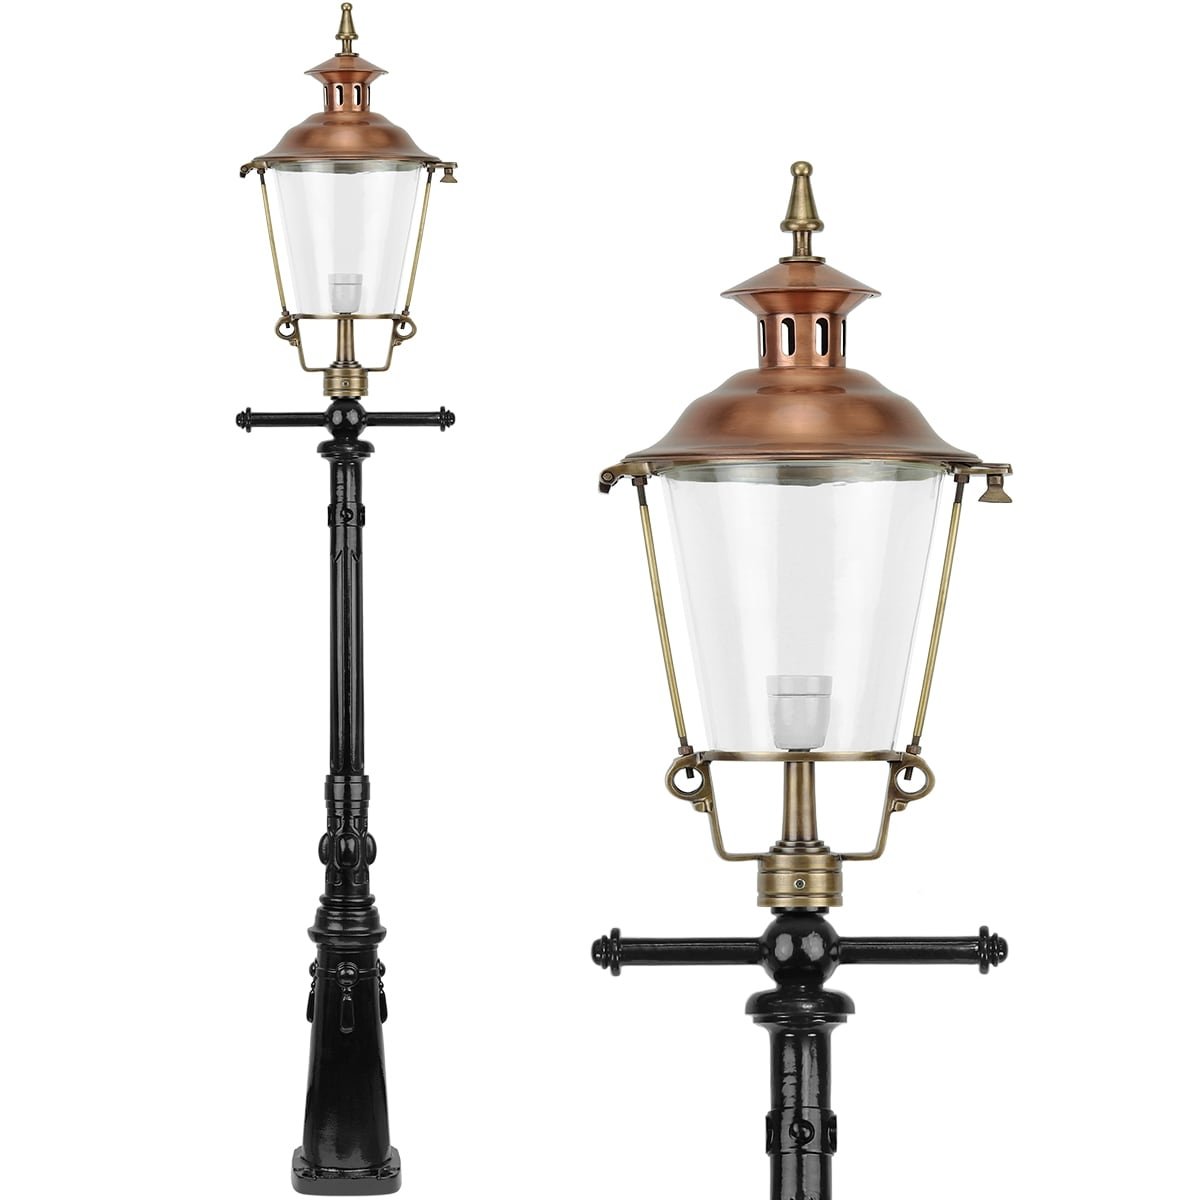 Lanterne de rue cuivre Purmerend - 250 cm